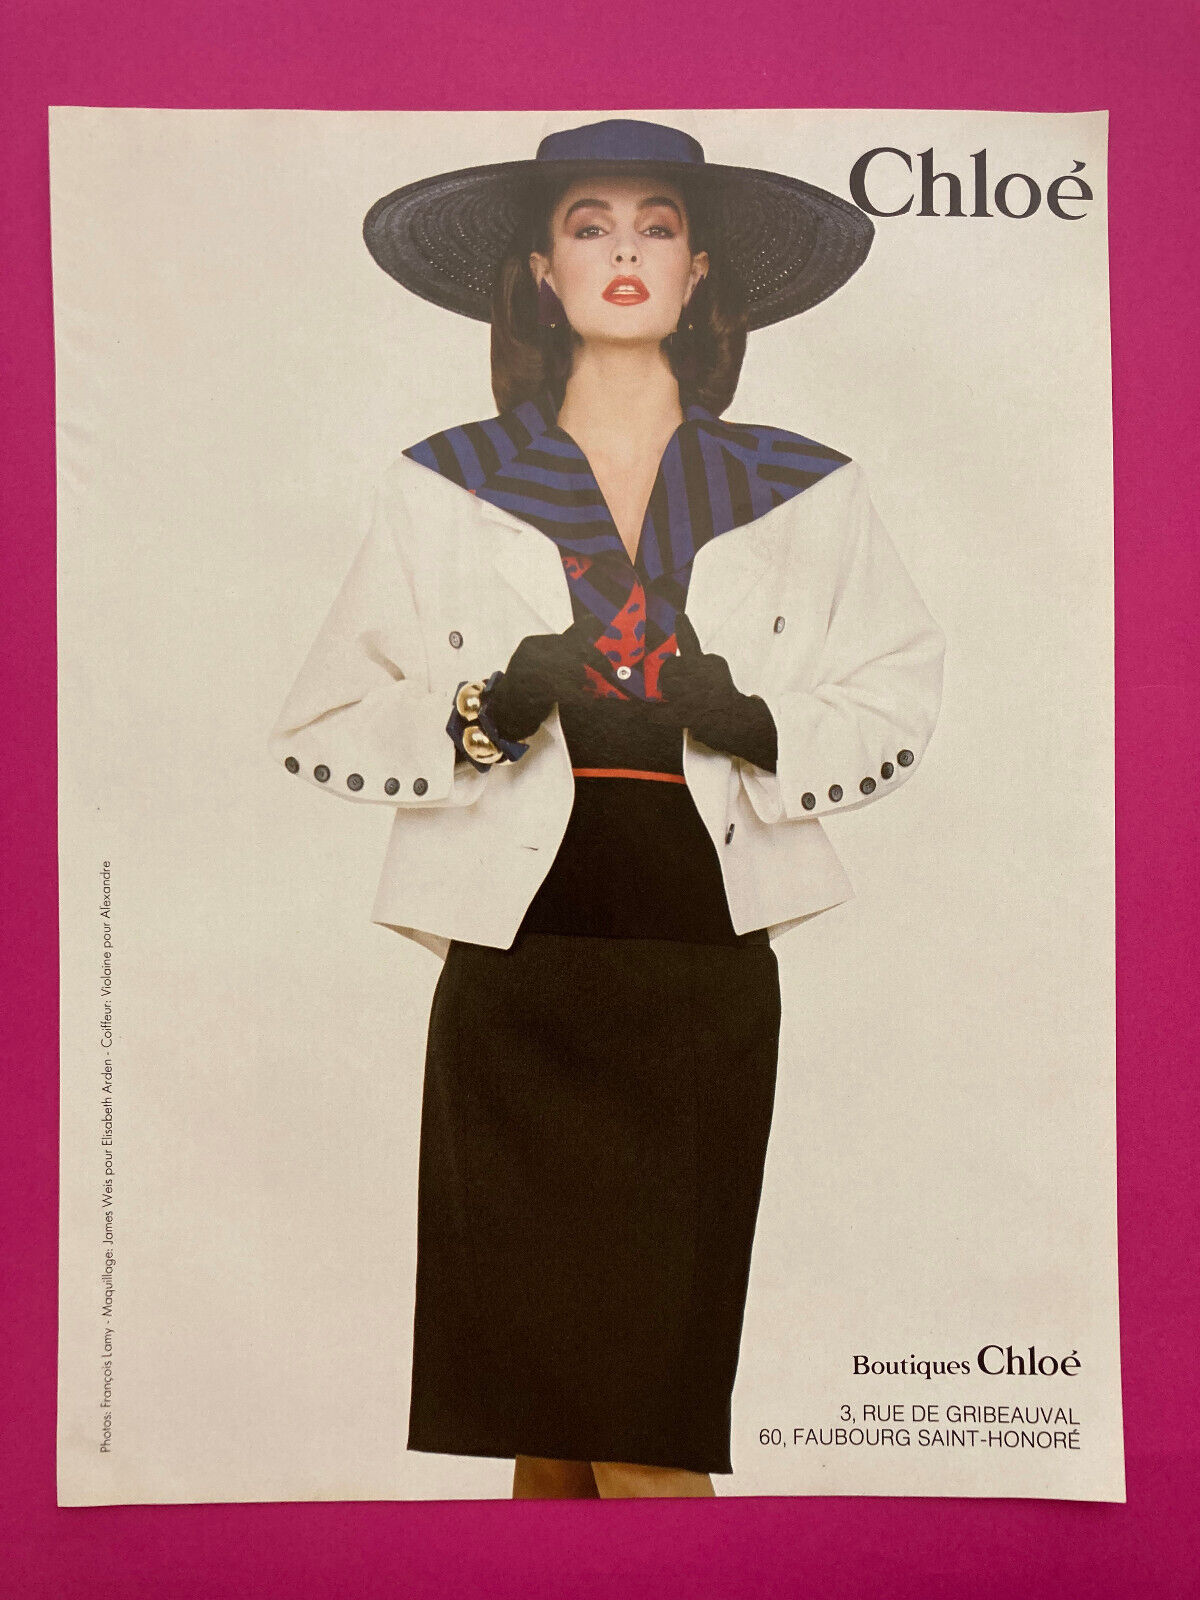 Chloe Spring Summer 1983 Vintage Advertising 80s Pub Lagerfeld Fashion Retro Press